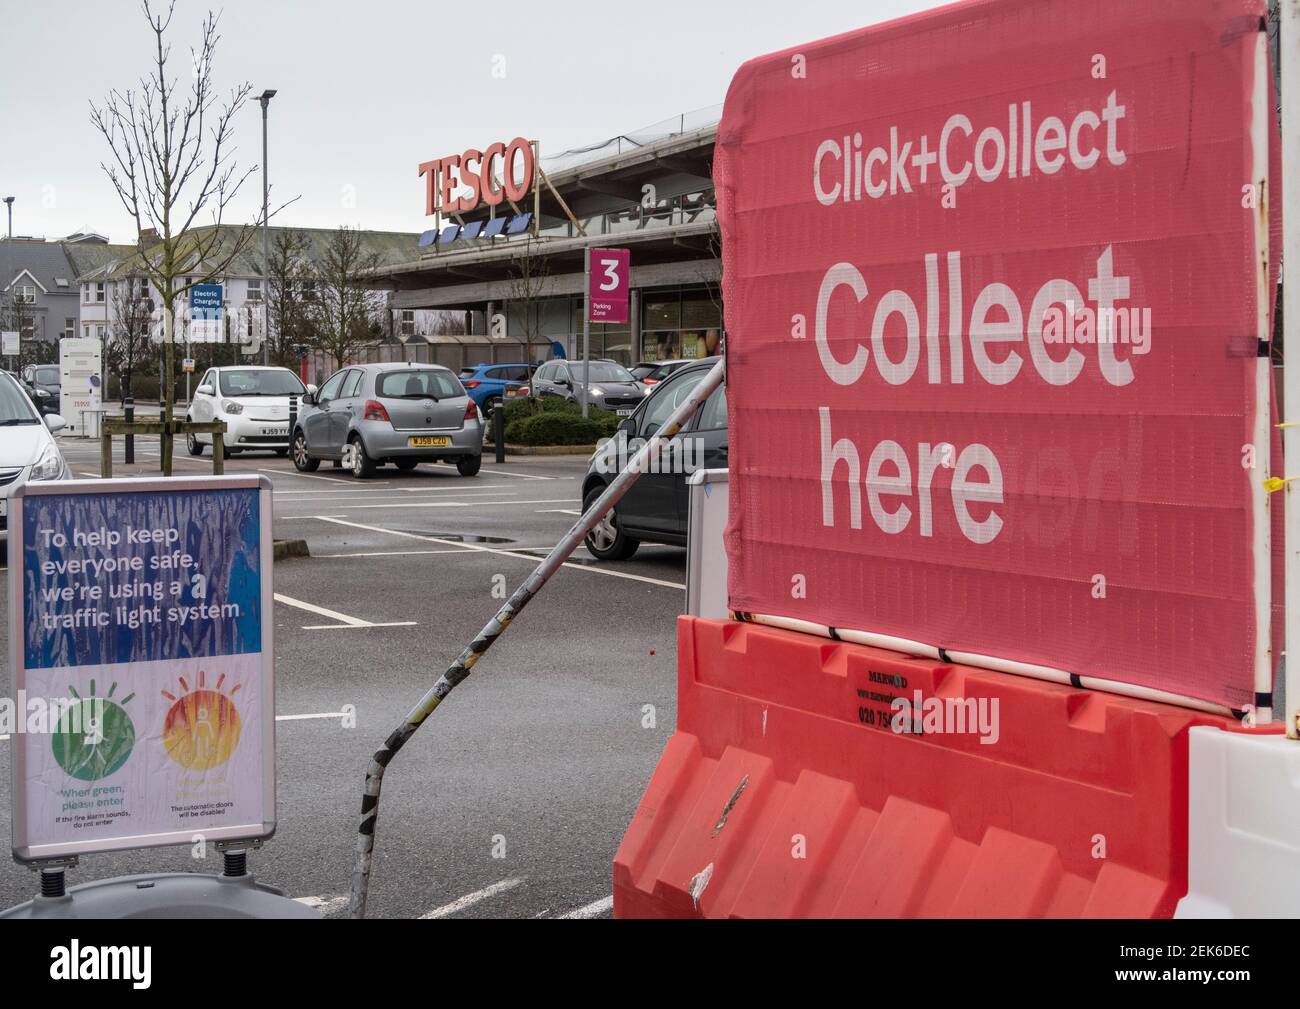 Haz clic y recoge en un supermercado Tesco en Seaton, Devon. Los sistemas de entrega y recogida de alimentos han sido muy demandados durante la pandemia de Covid. Foto de stock